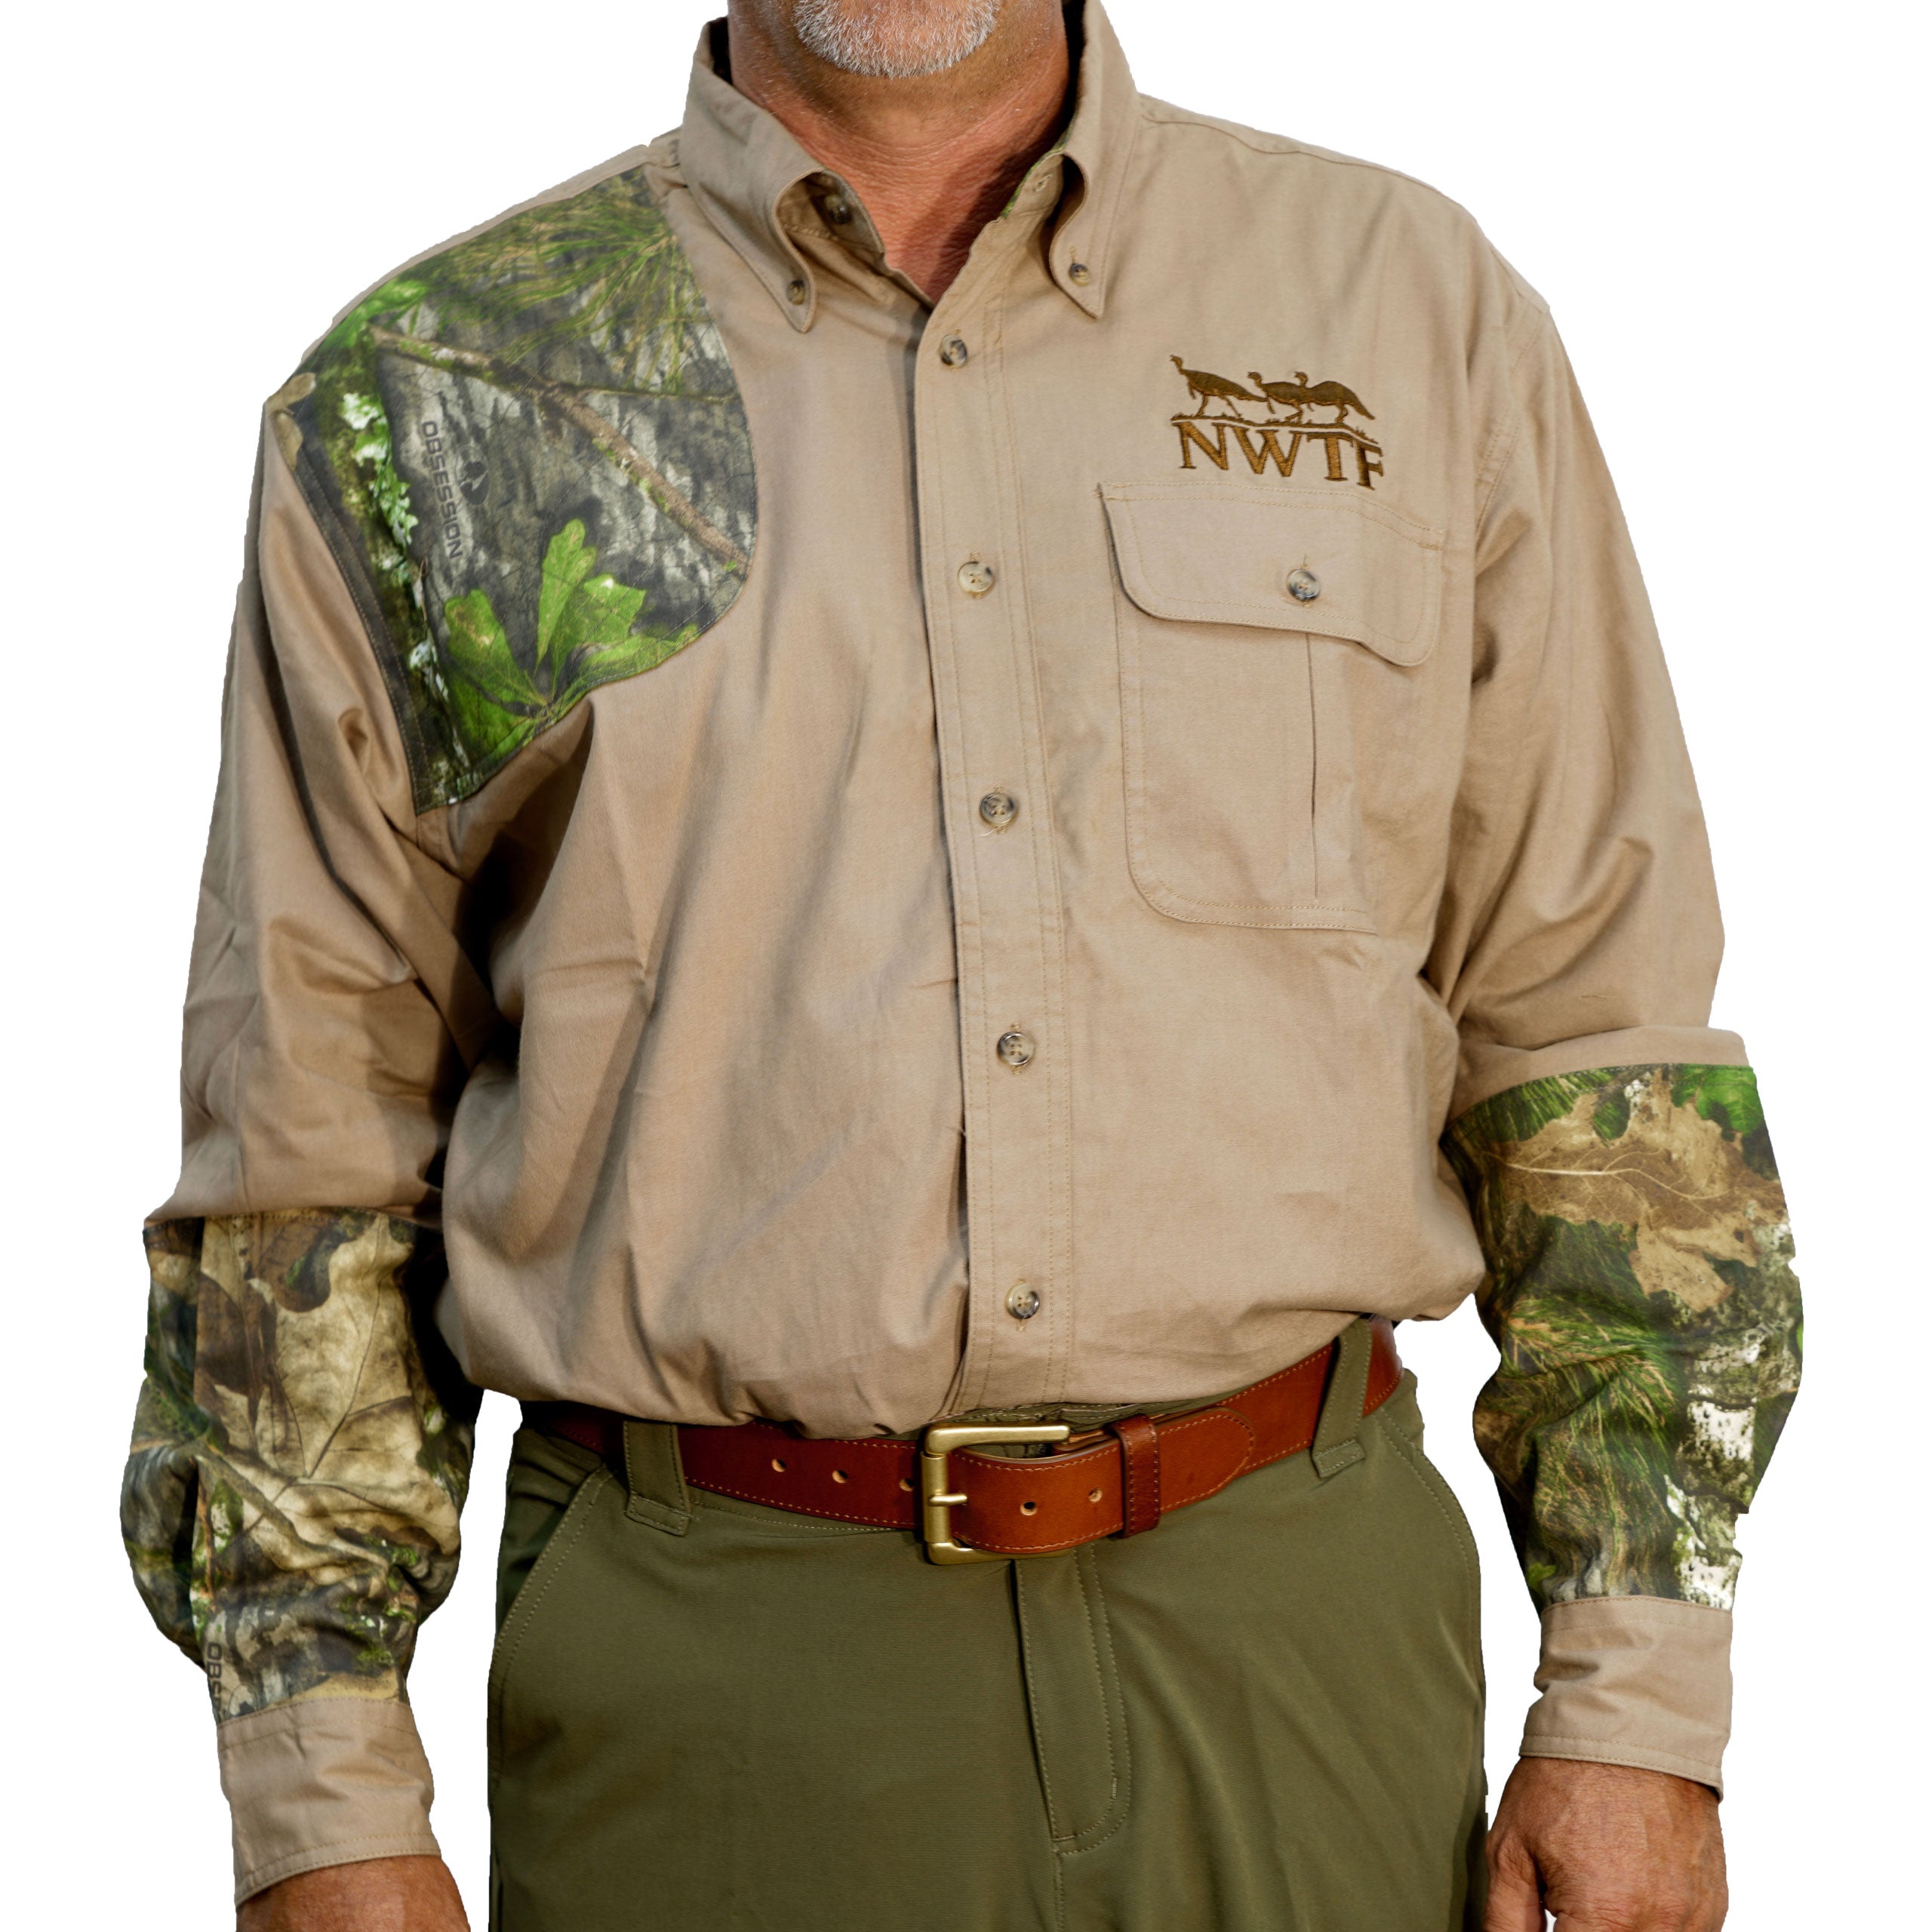 NWTF Long Sleeve Hunting Shirt XL / Black